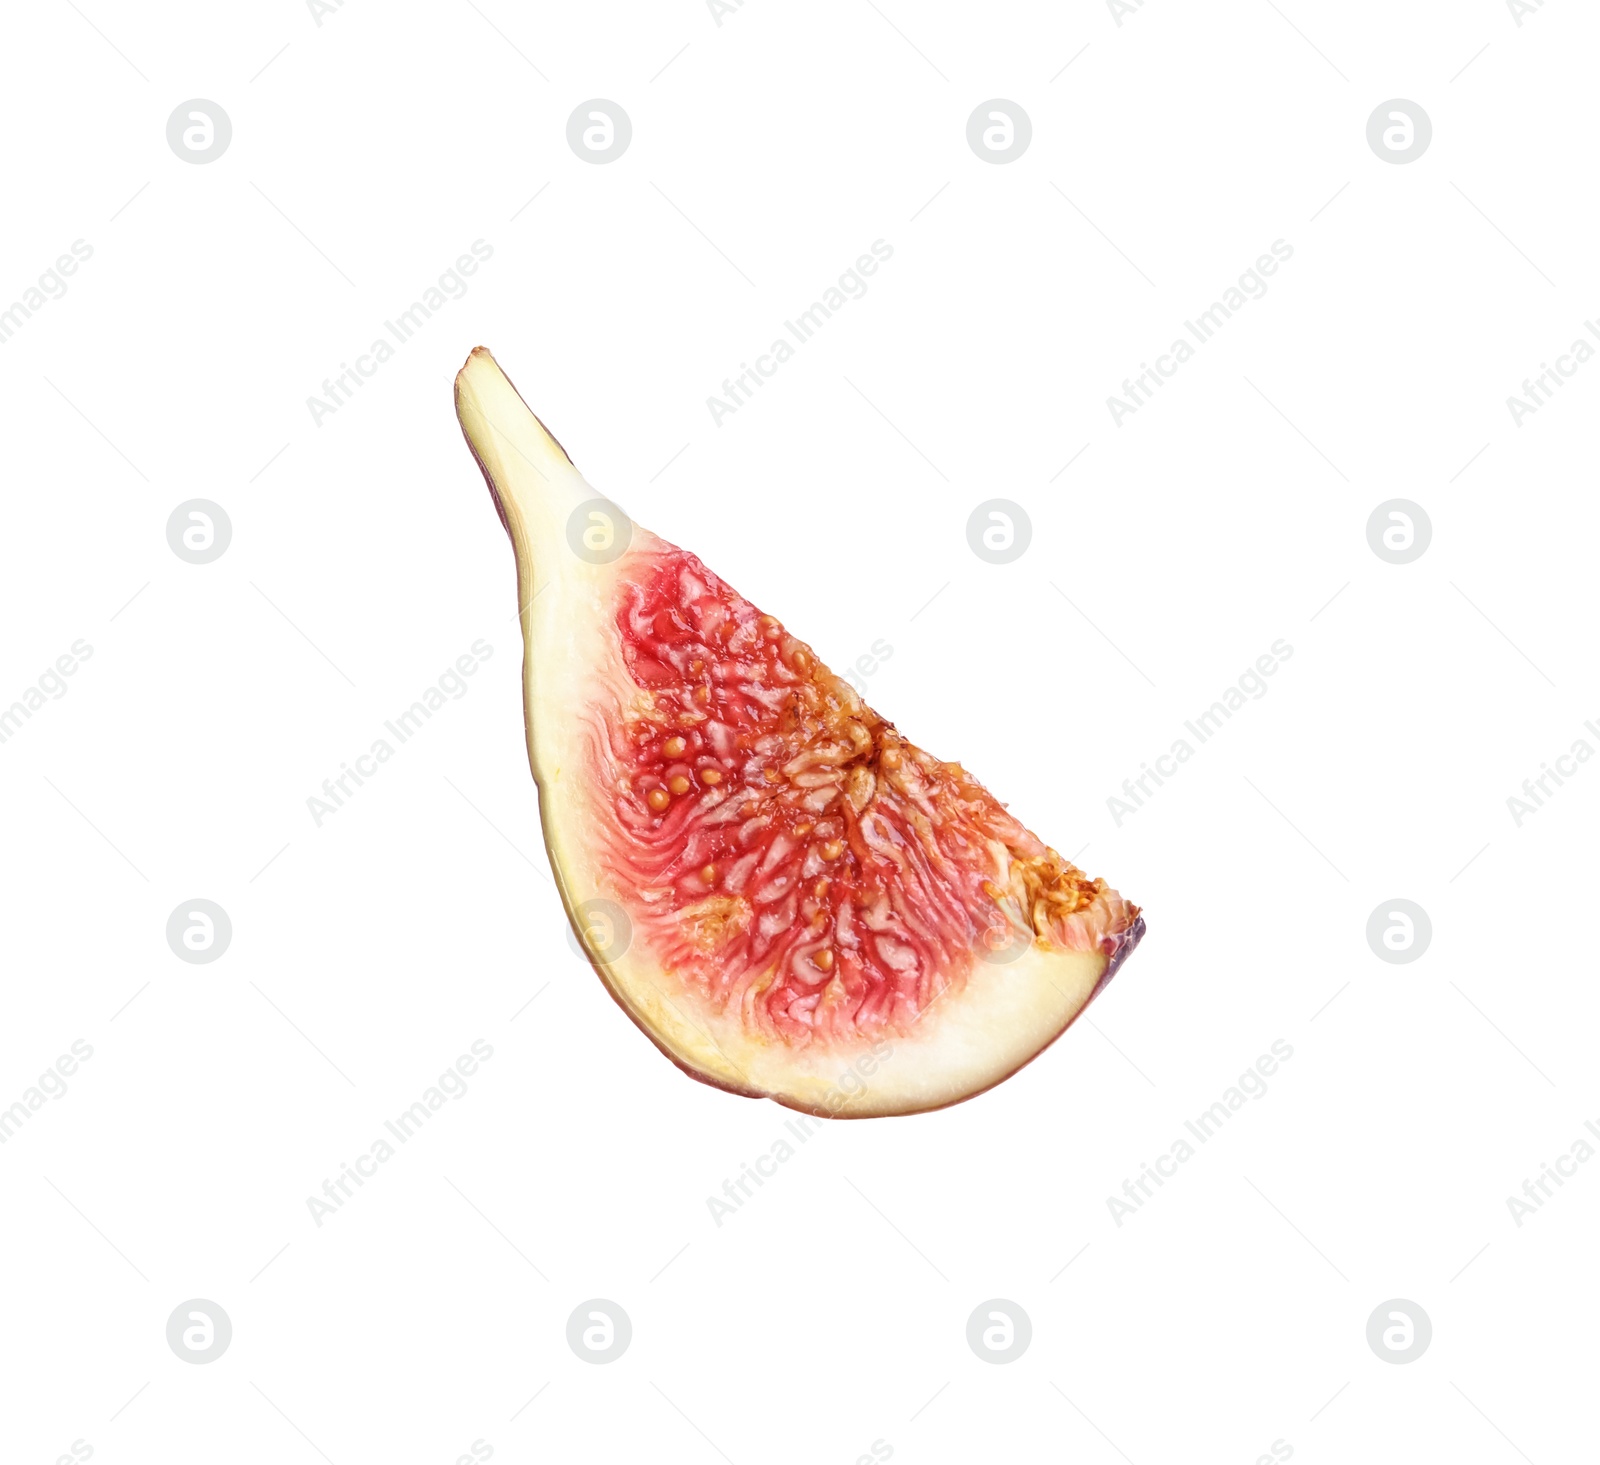 Photo of Slice of fresh ripe fig isolated on white